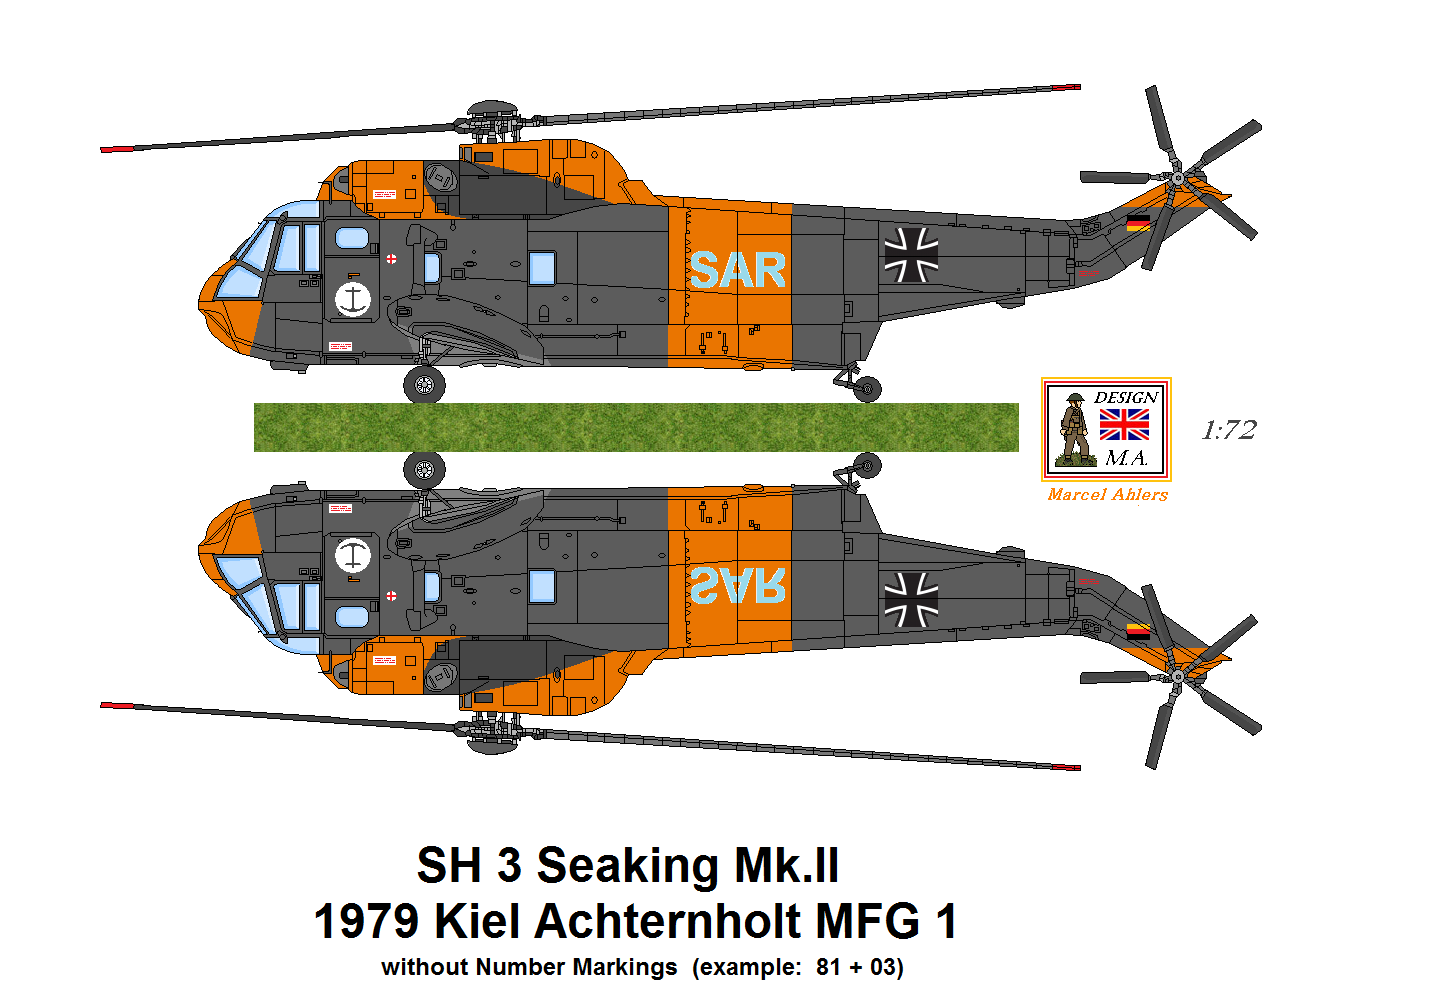 German SH-3 Seaking Mk.II